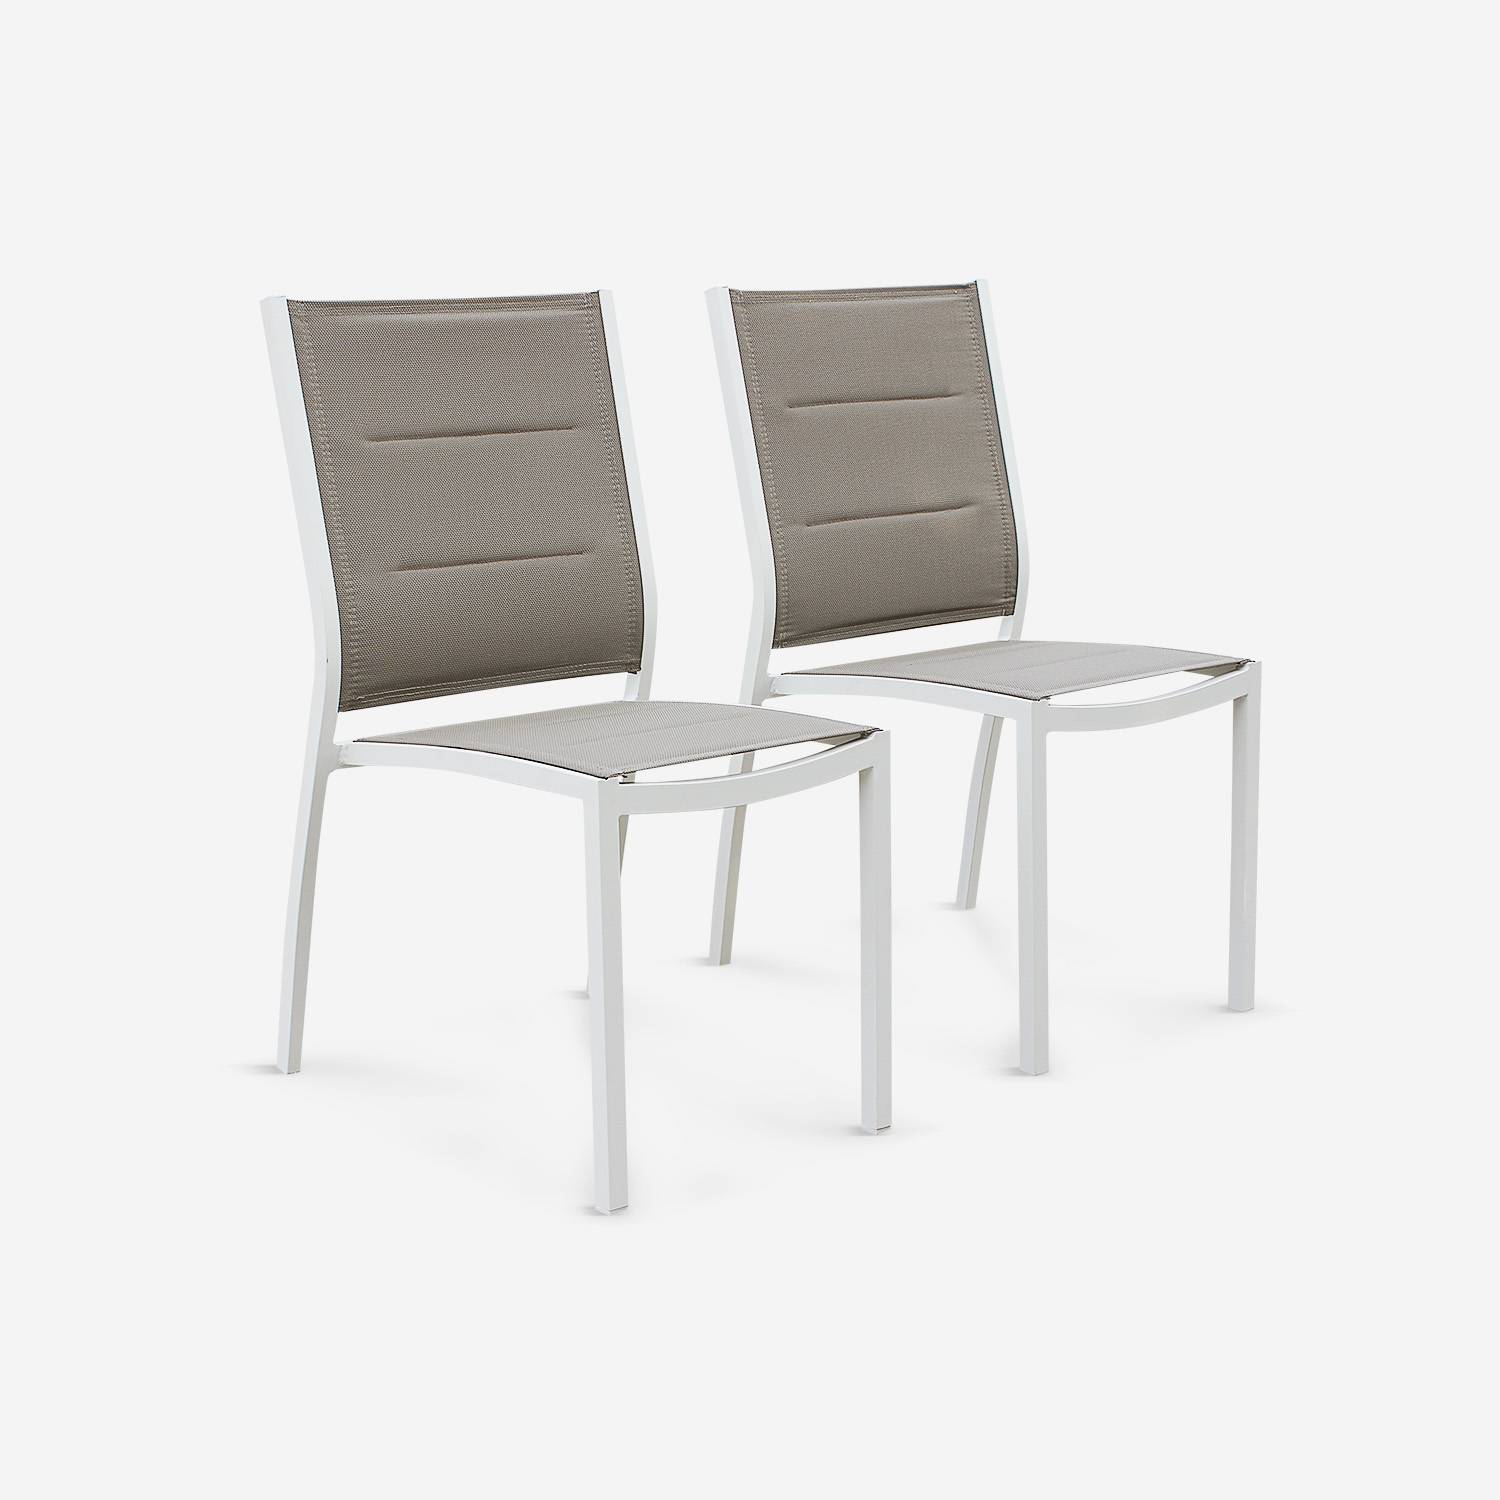 Coppia di sedie Chicago/Odenton in alluminio bianco e textilene colore marrone talpa,sweeek,Photo3